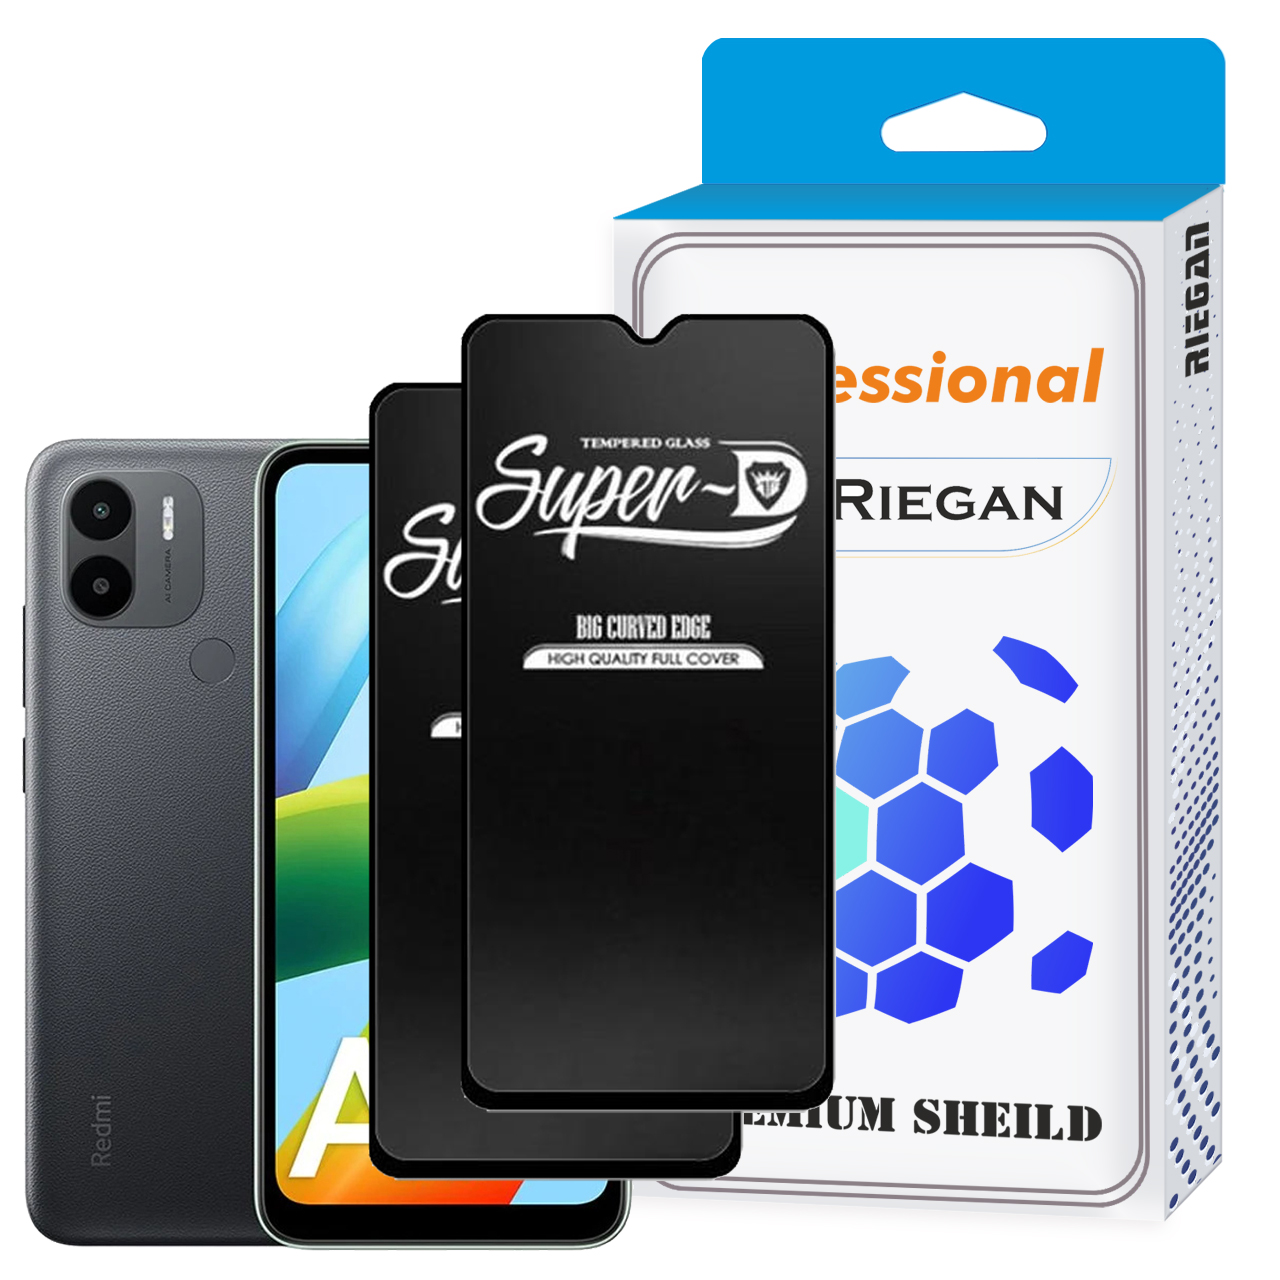   محافظ صفحه نمایش ری گان مدل superd- A1 مناسب برای گوشی موبایل شیائومی Redmi A1 plus بسته 2 عددی